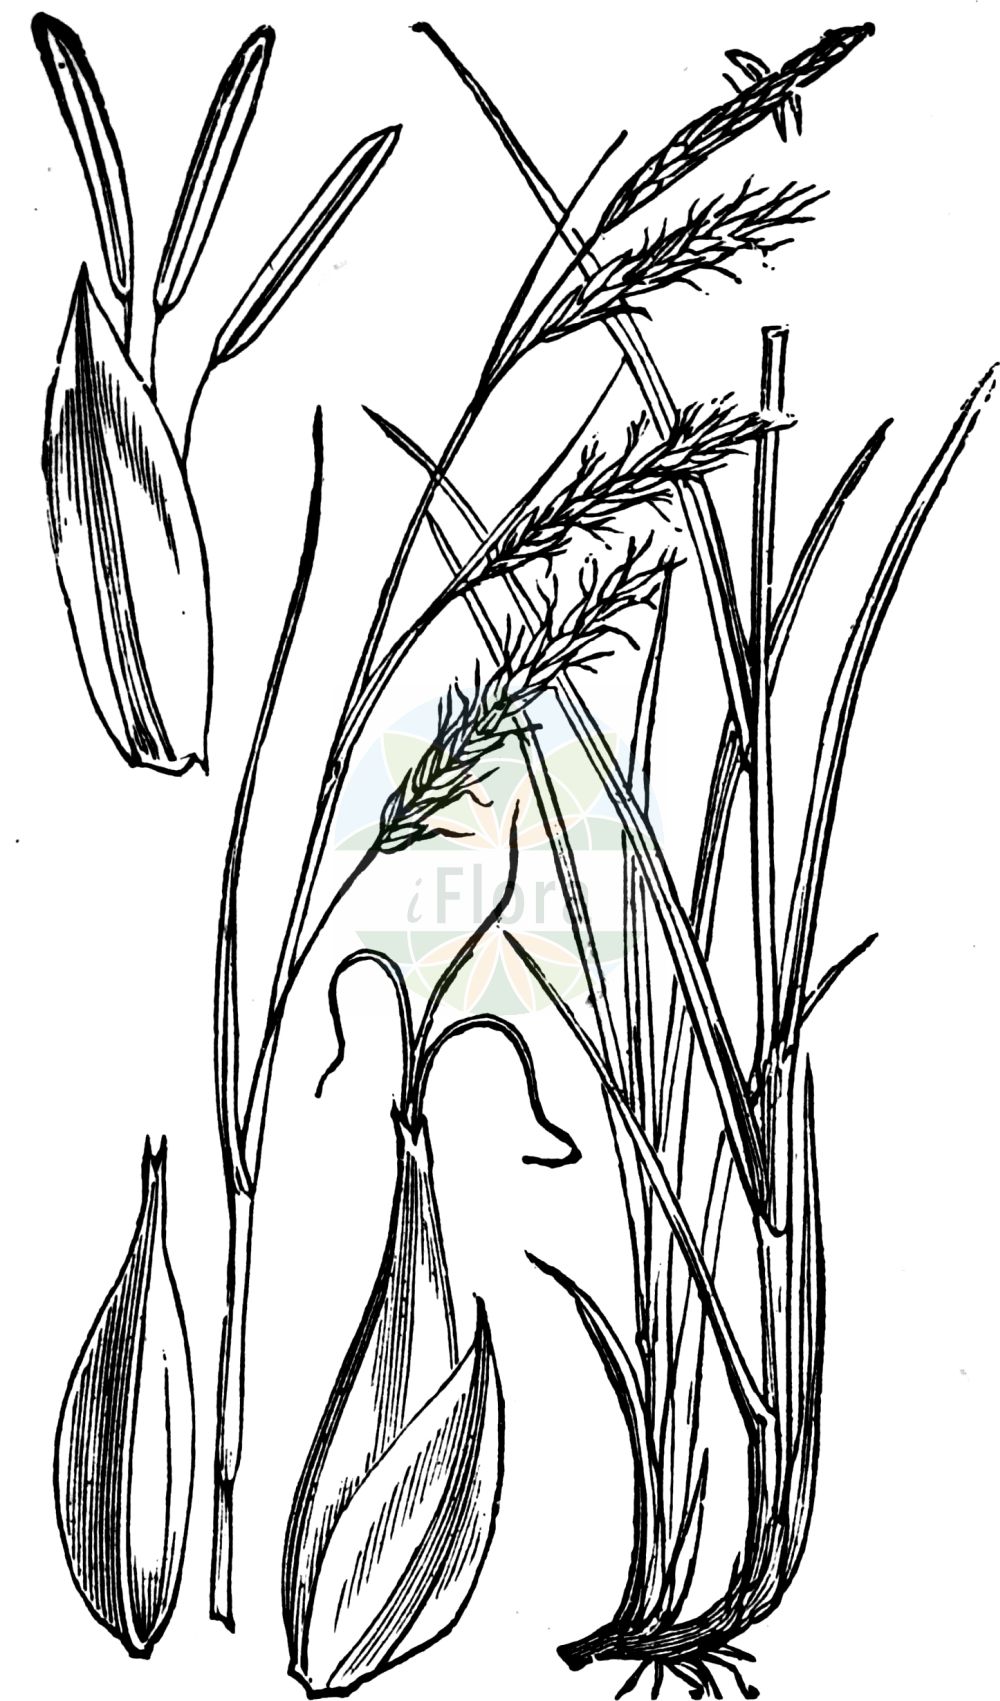 Historische Abbildung von Carex sylvatica (Wald-Segge - Wood-Sedge). Das Bild zeigt Blatt, Bluete, Frucht und Same. ---- Historical Drawing of Carex sylvatica (Wald-Segge - Wood-Sedge). The image is showing leaf, flower, fruit and seed.(Carex sylvatica,Wald-Segge,Wood-Sedge,Carex sylvatica,Wald-Segge,Wood-Sedge,European Woodland Sedge,Carex,Segge,Sedge,Cyperaceae,Sauergräser,Sedge family,Blatt,Bluete,Frucht,Same,leaf,flower,fruit,seed,Fitch et al. (1880))